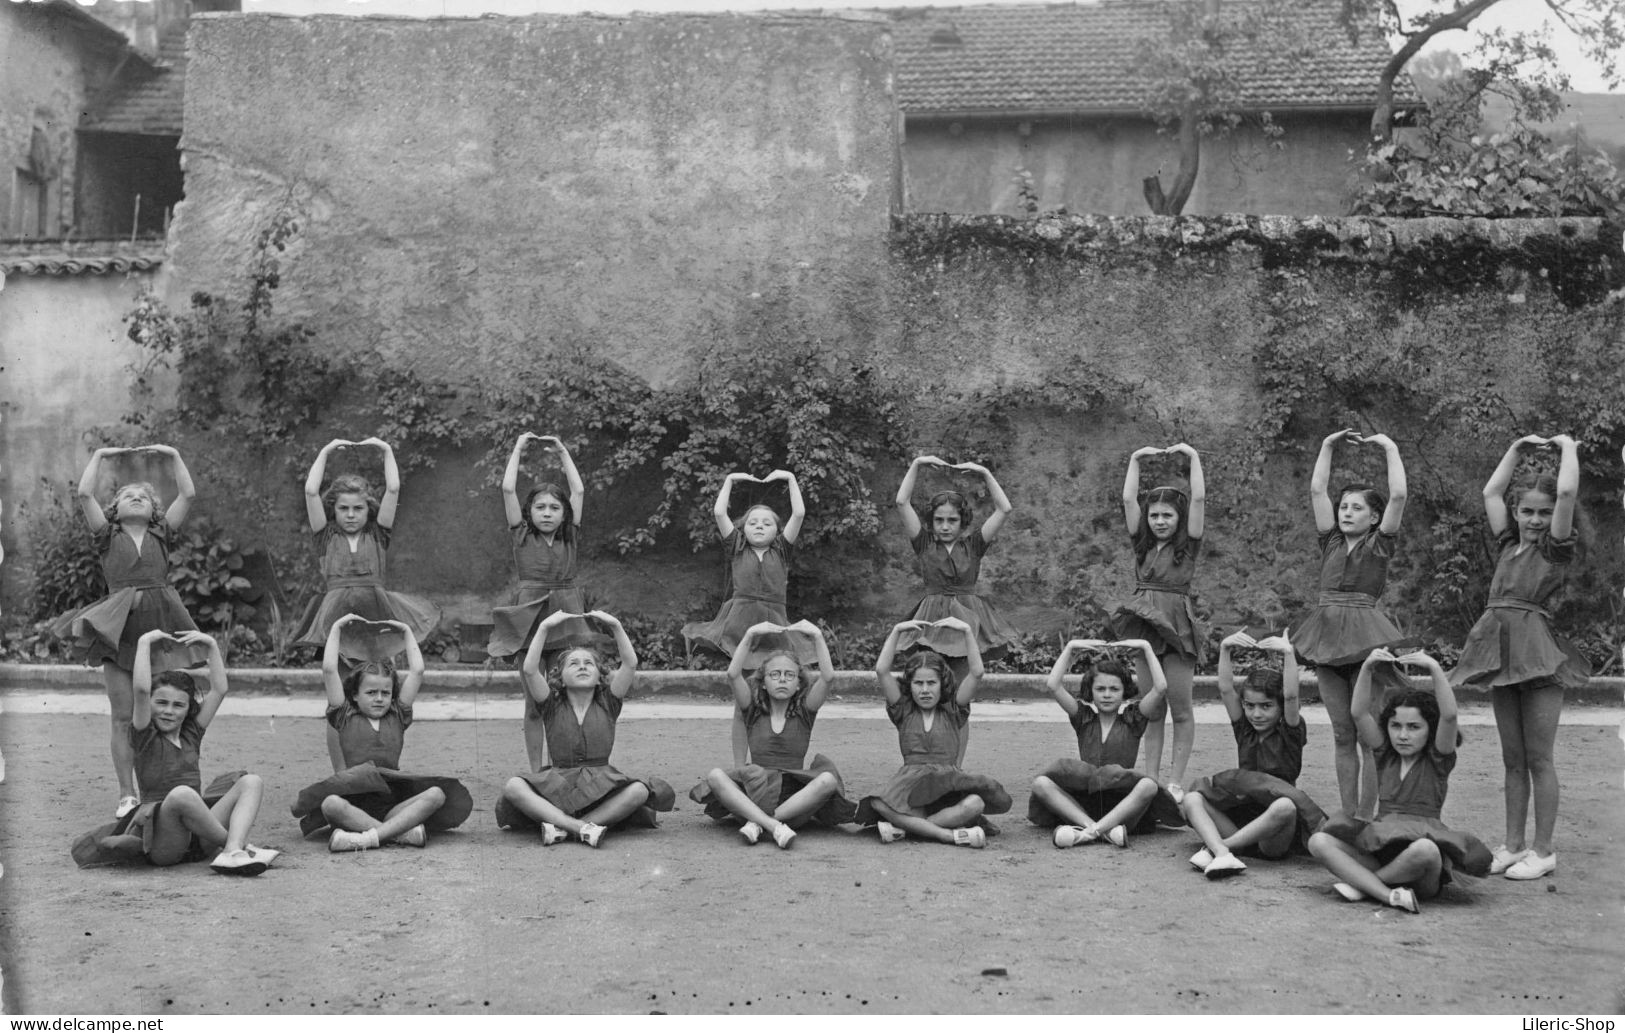 Photographie Originale 140x90  - Leçon De Gymnastique Pour Jeunes Filles - Anonymous Persons